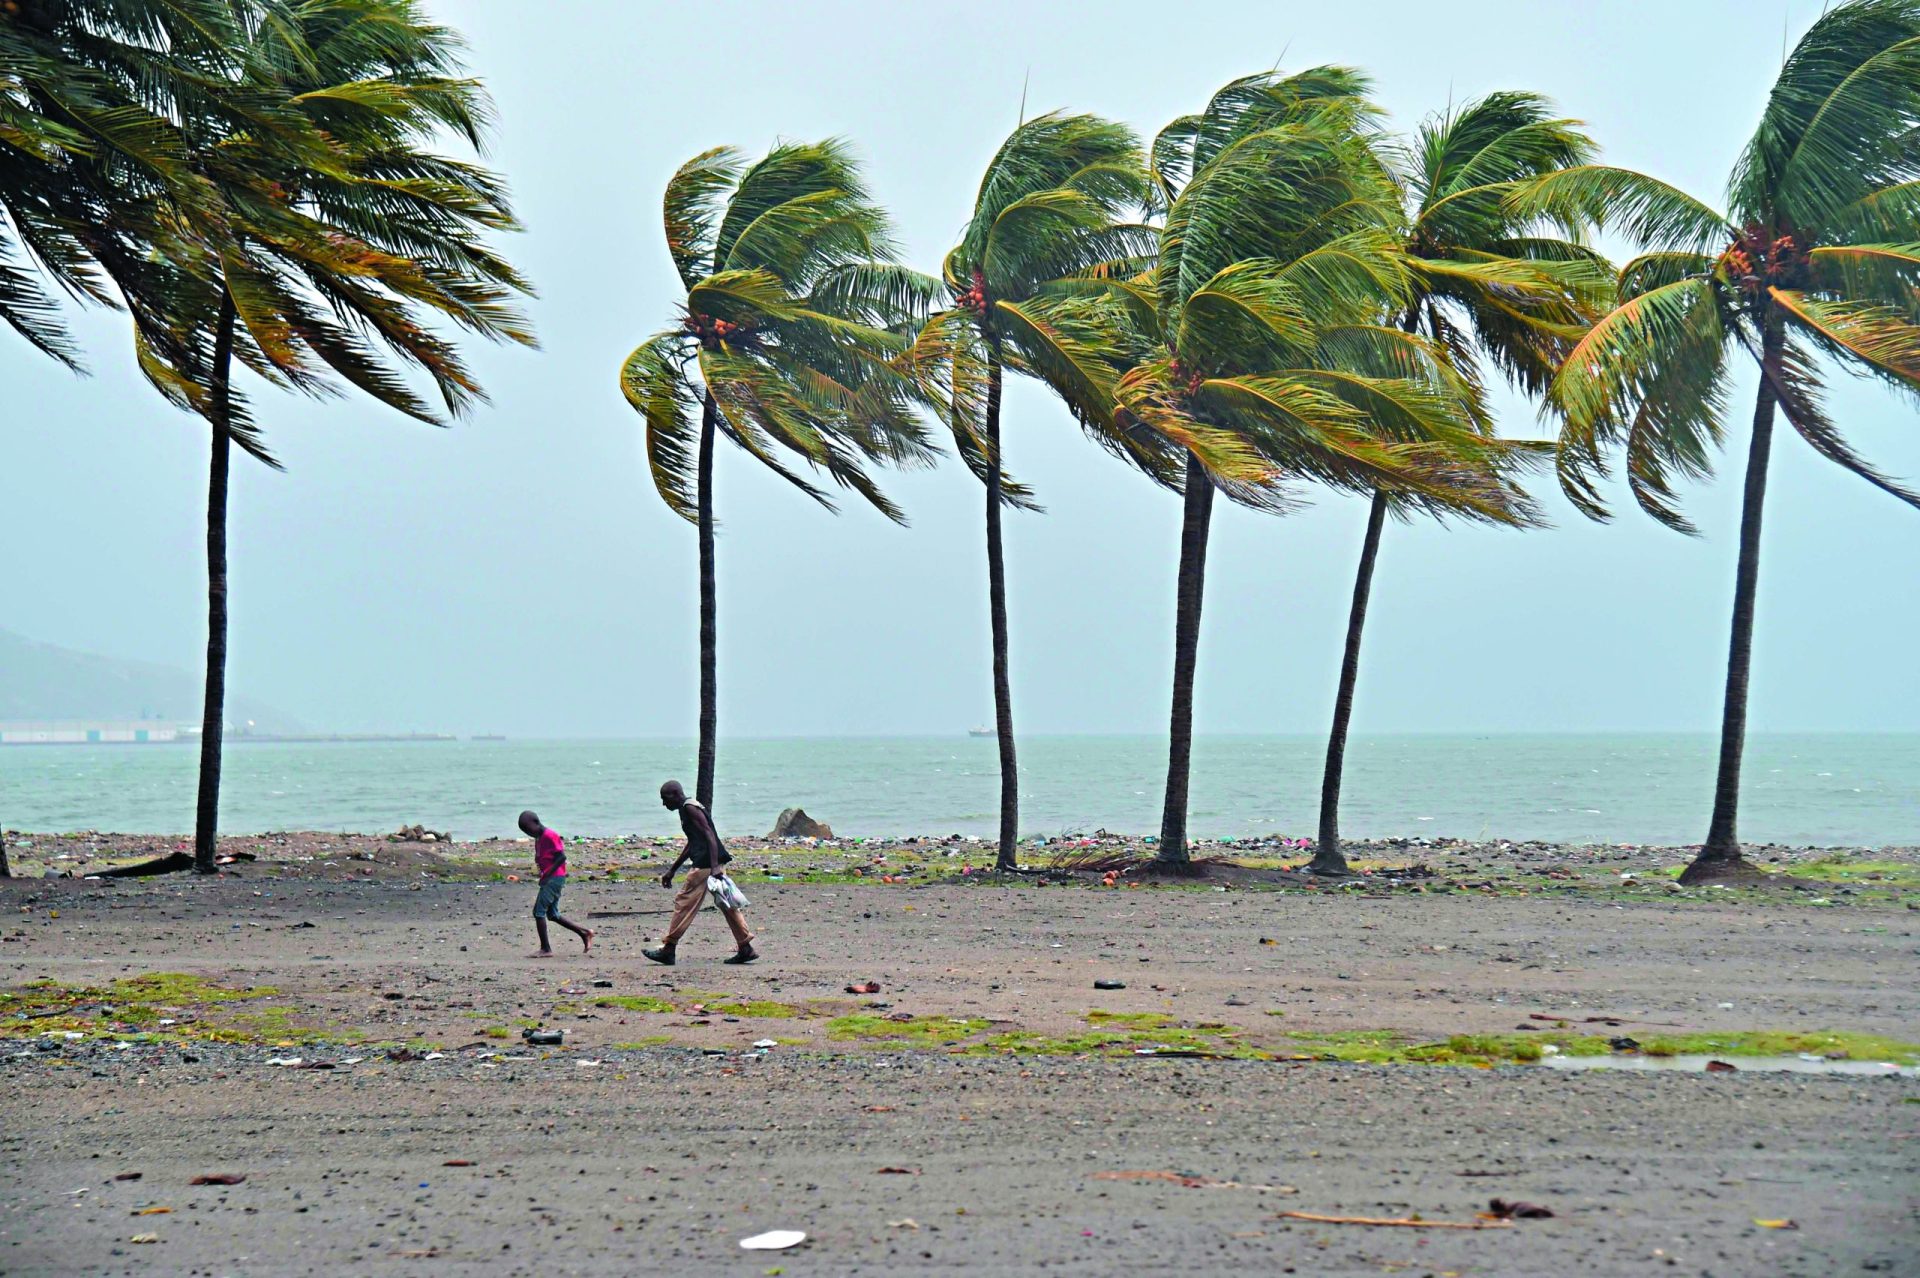 Irma. Devastação nas pequenas ilhas poupa territórios maiores